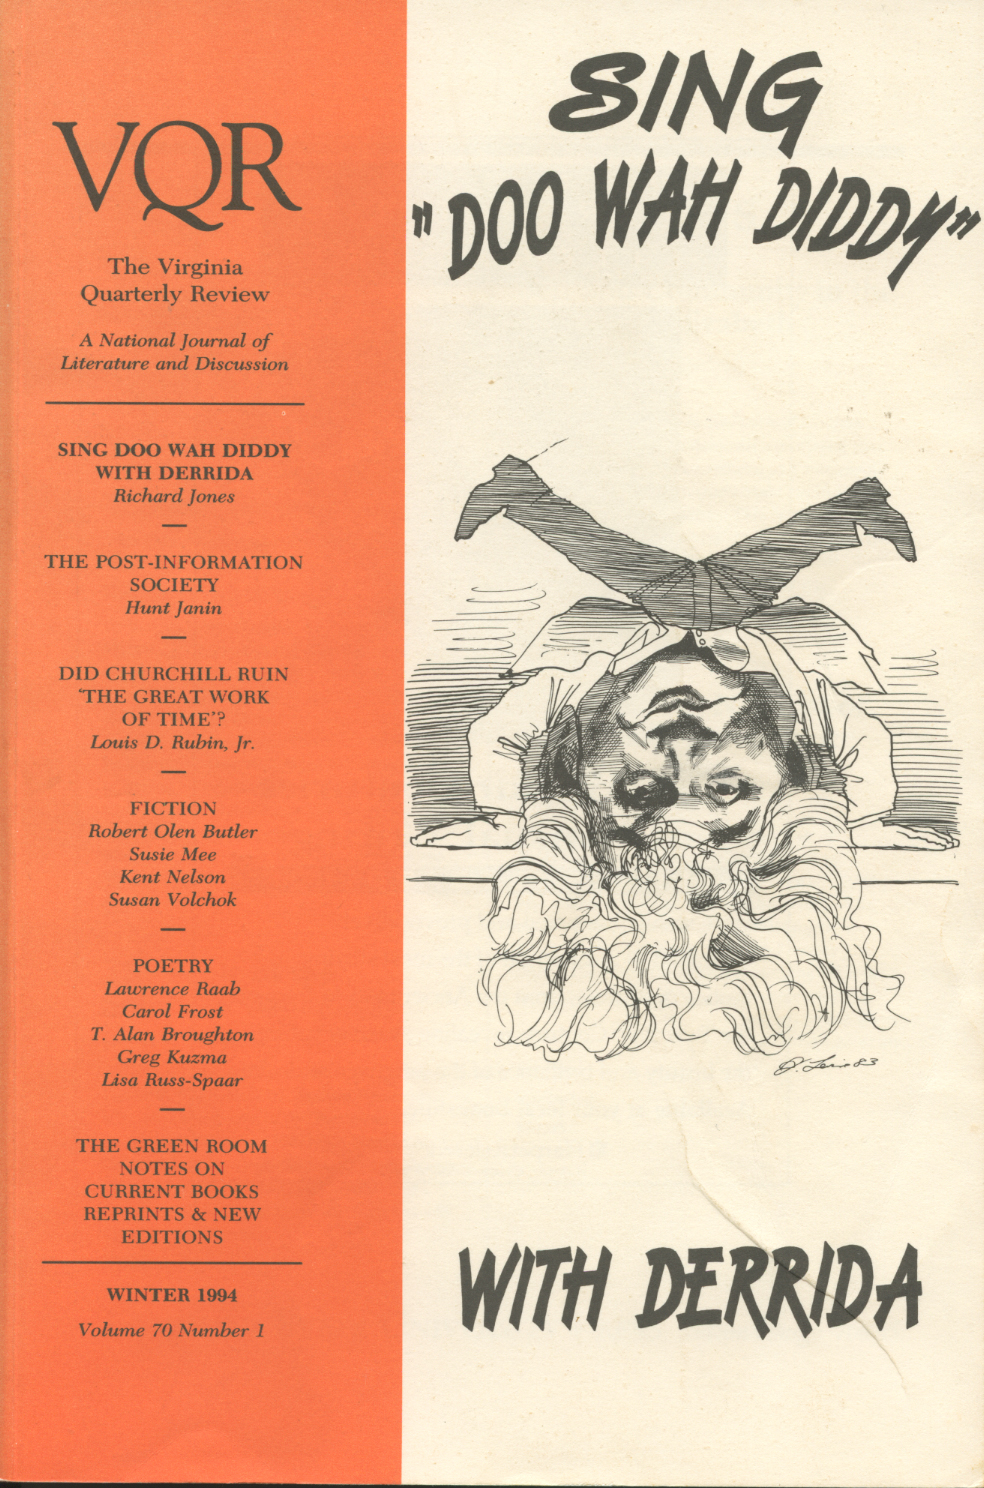 Virginia Quarterly Review, Winter 1994 cover